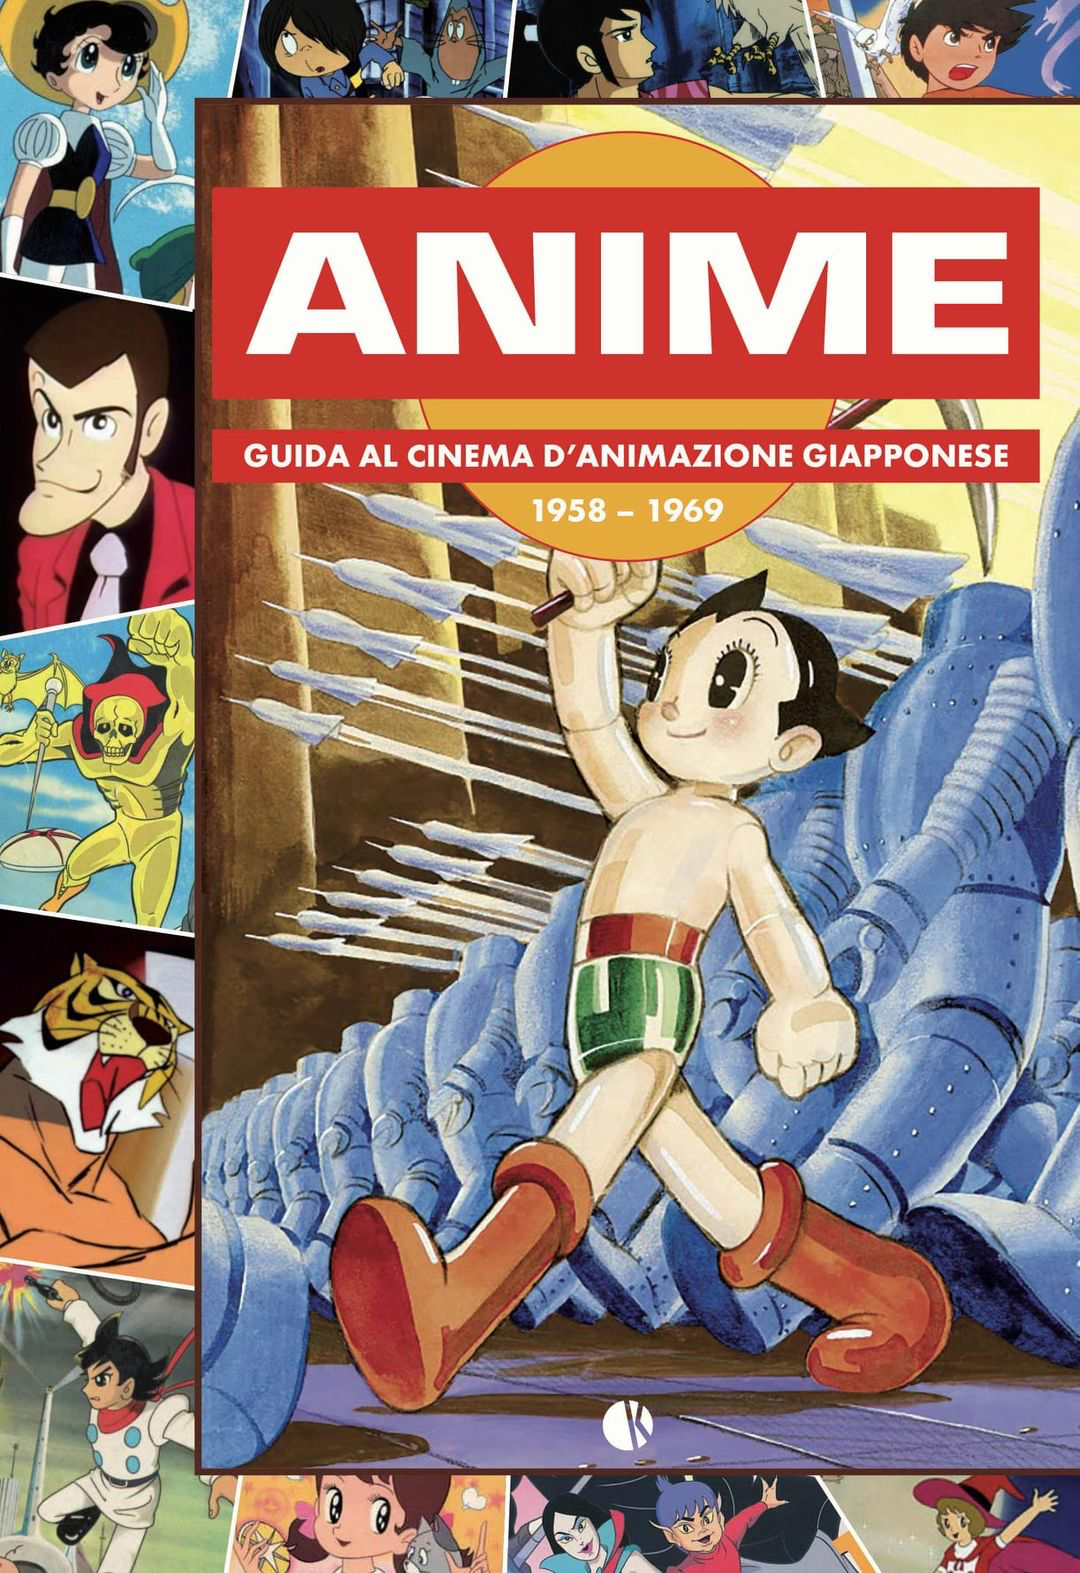 Anime, guida al cinema d’animazione giapponese 1958 – 1969